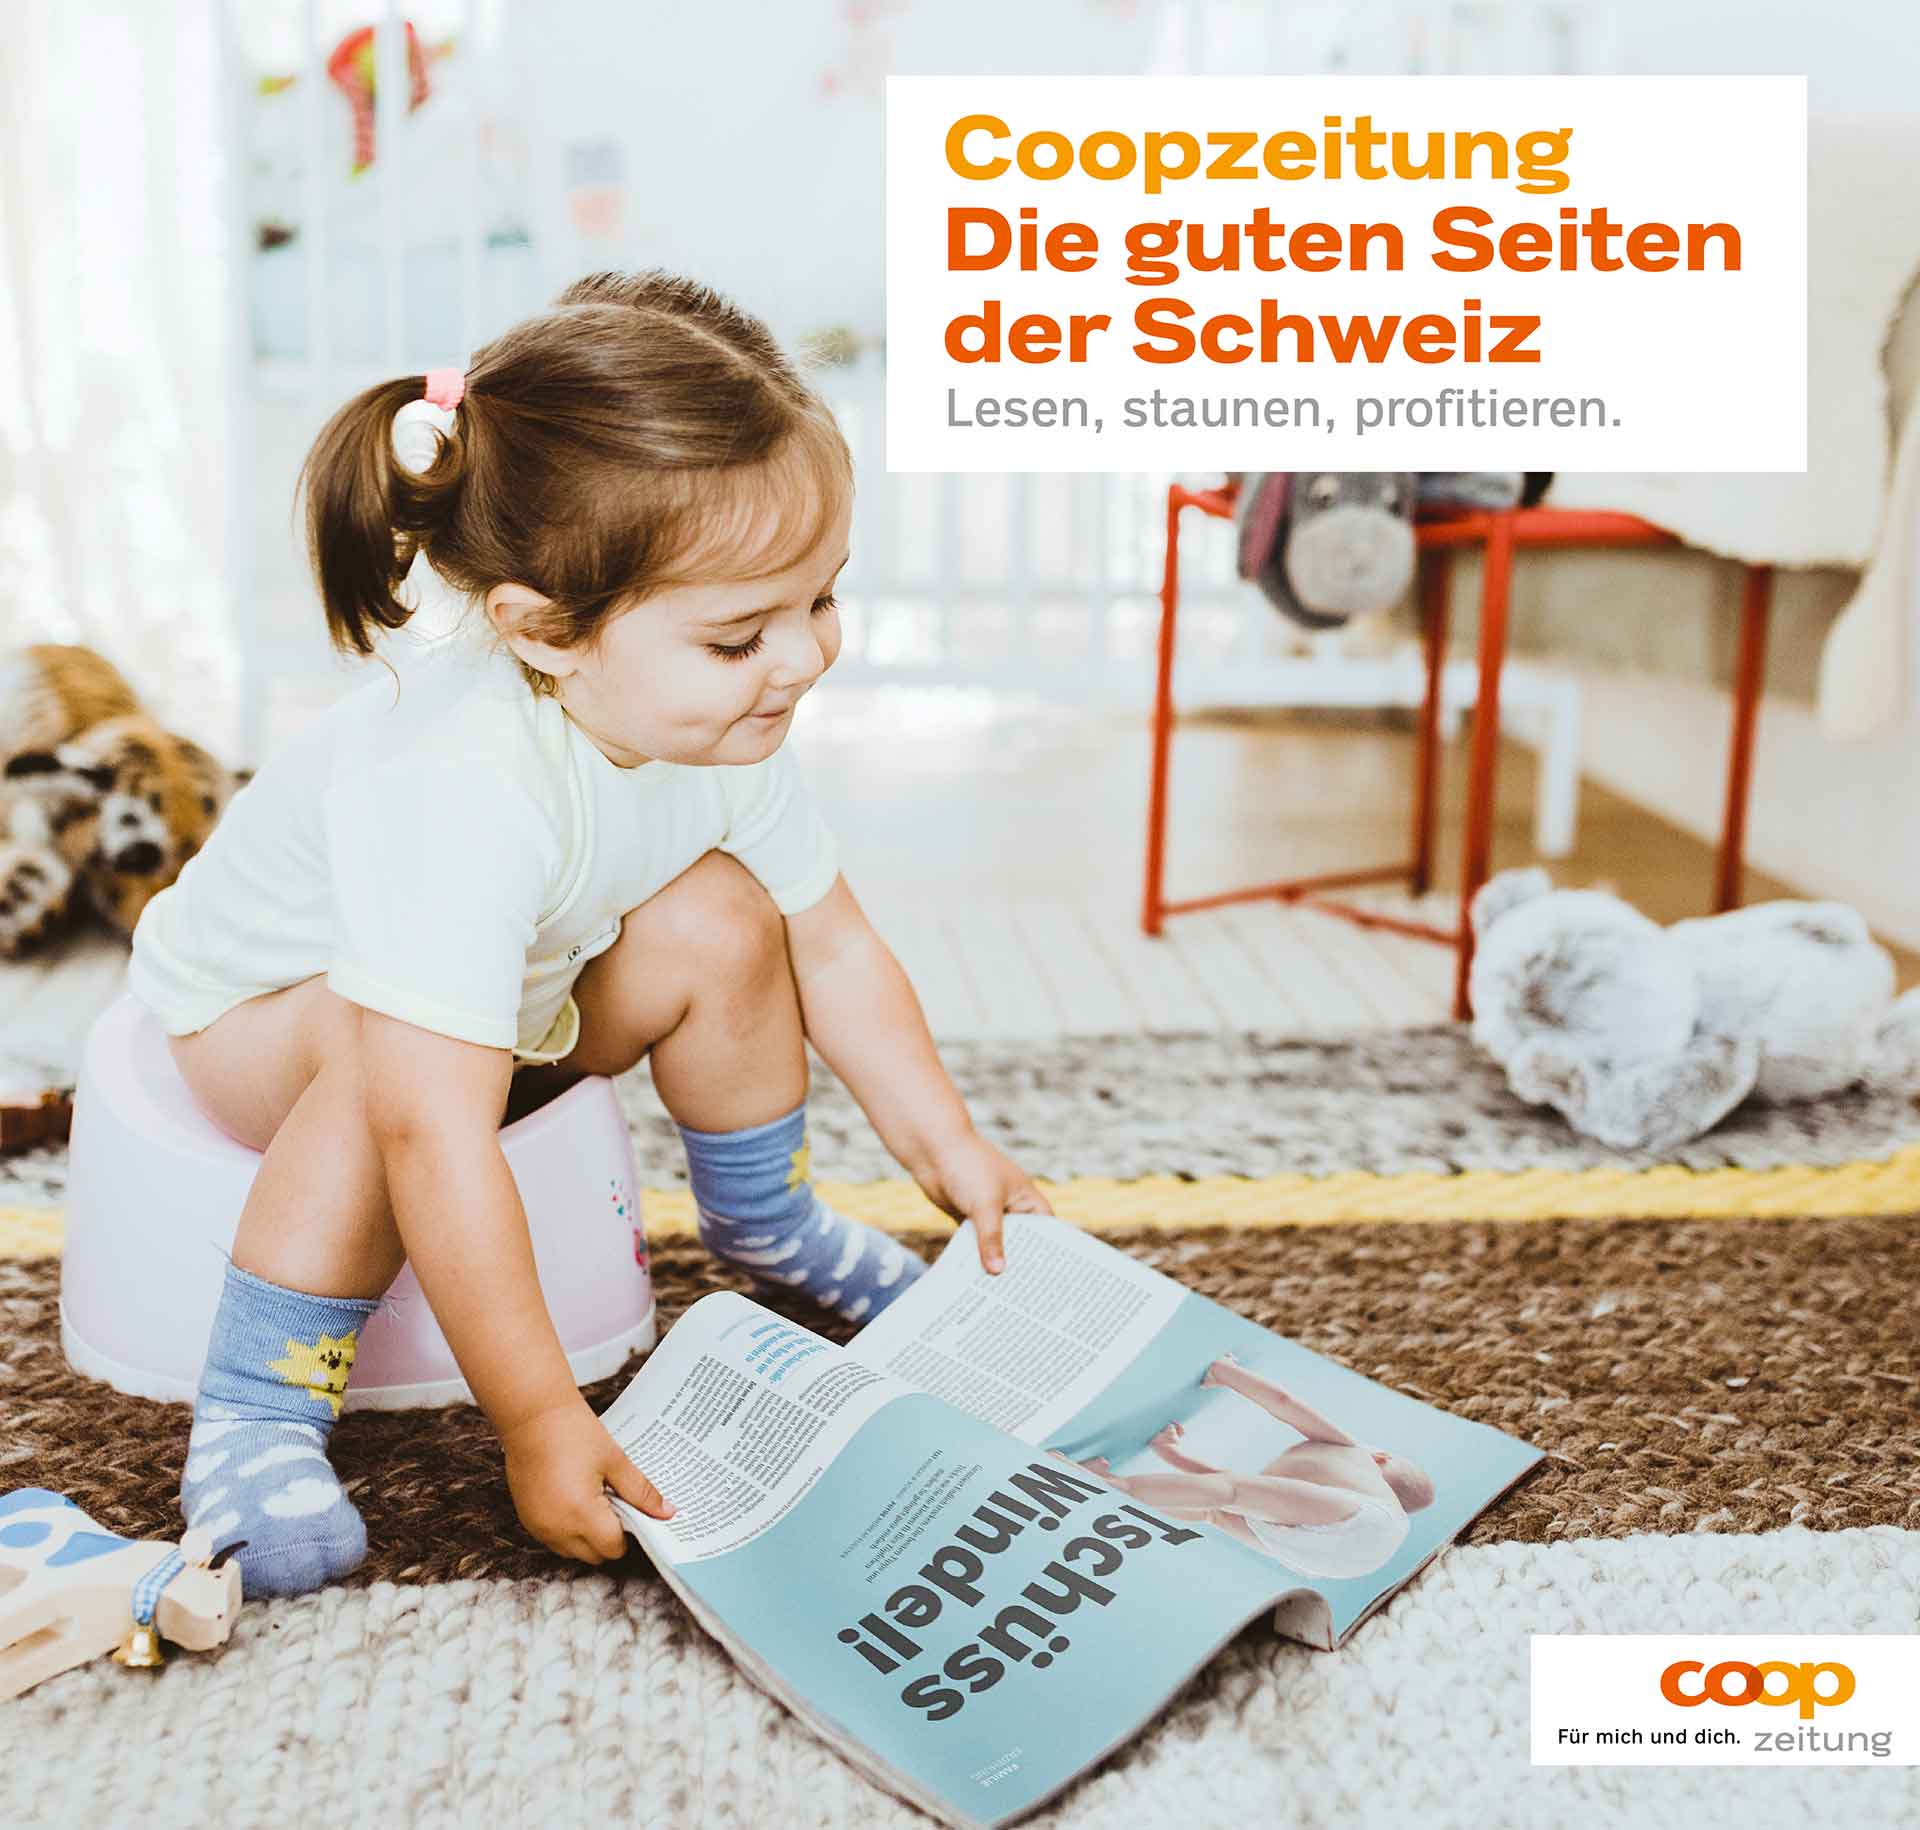 cr Basel Werbeagentur coopzeitung imagekampagne